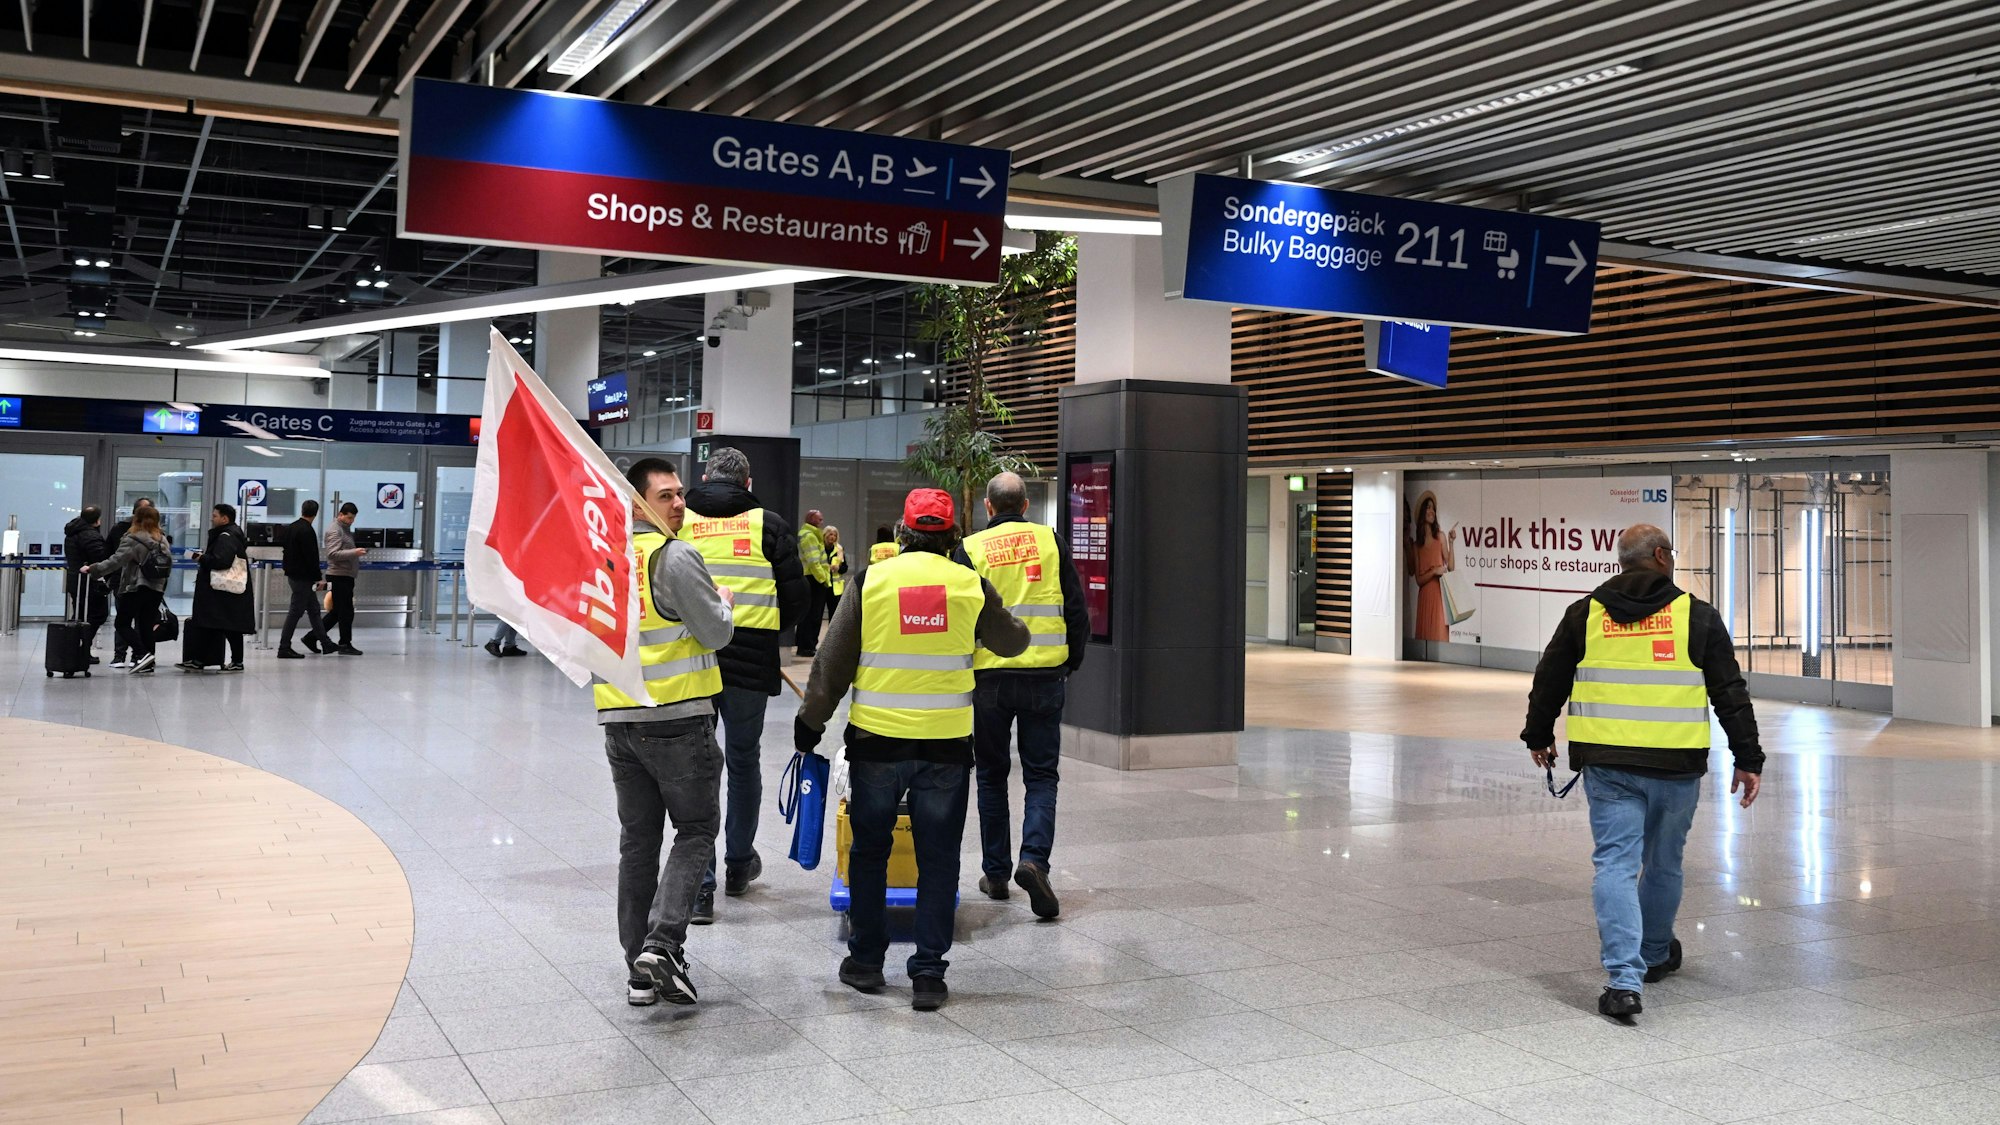 Männer gehen mit einer Verdi-Fahne durch einen Flughafen während eines Streiks.